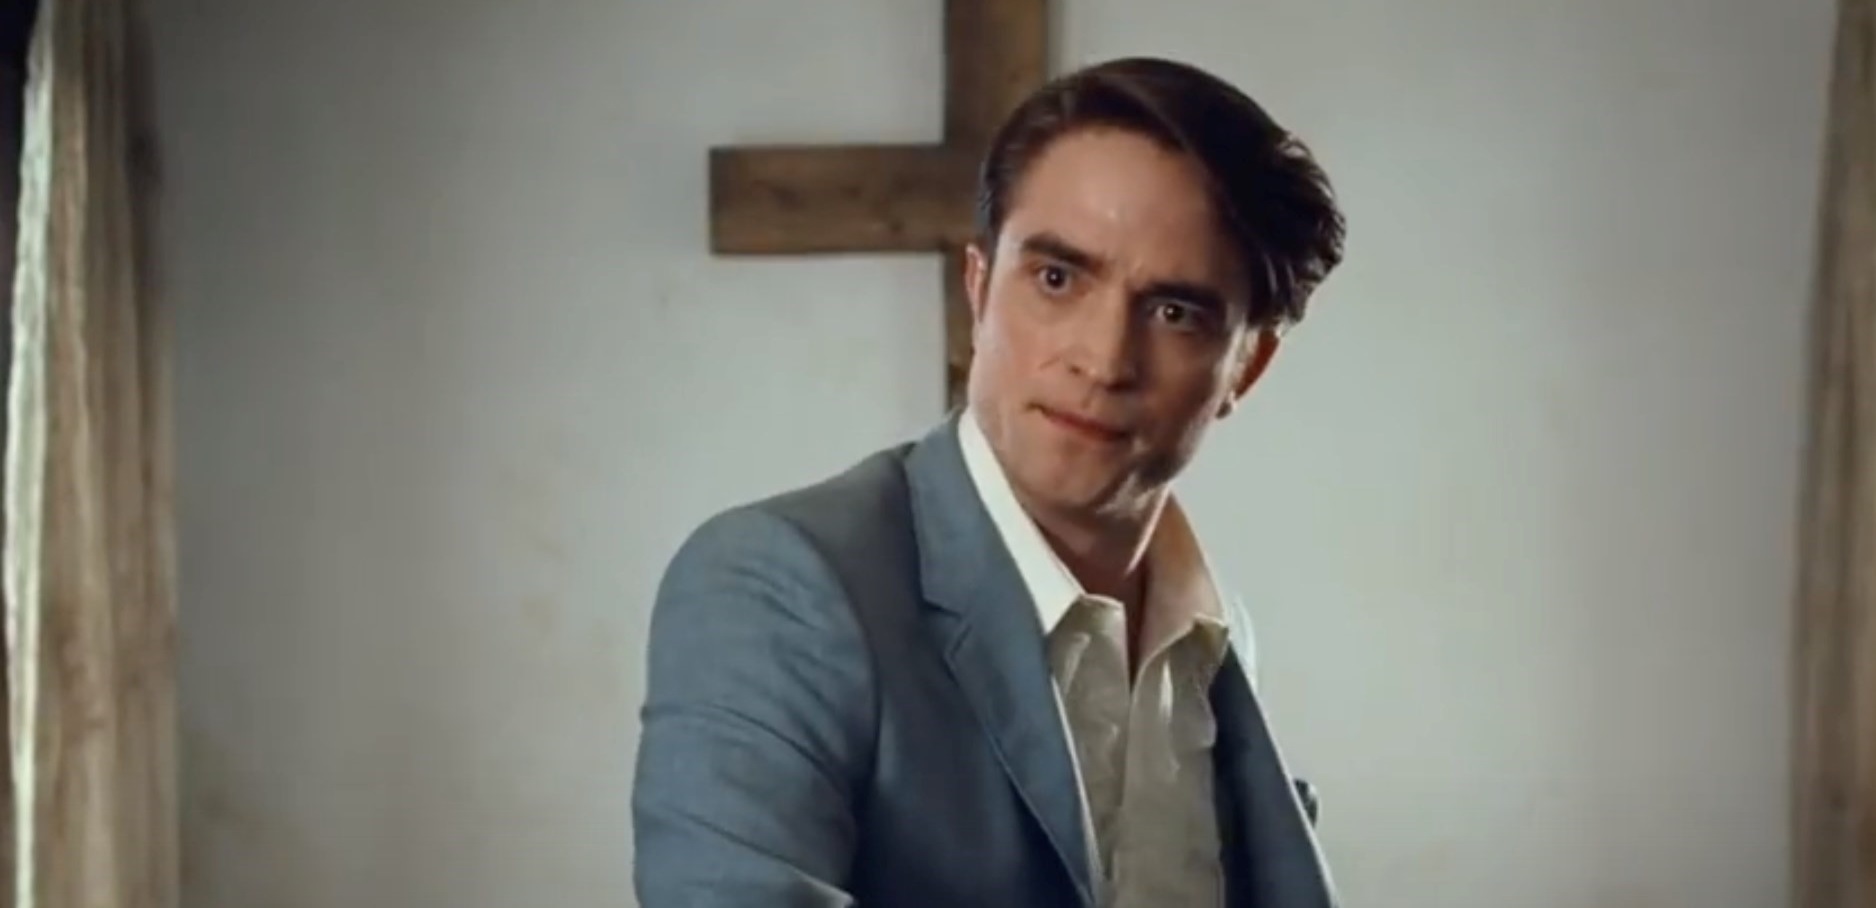 Director de "The Devil All the Time" reveló la petición a la que se negó Robert Pattinson